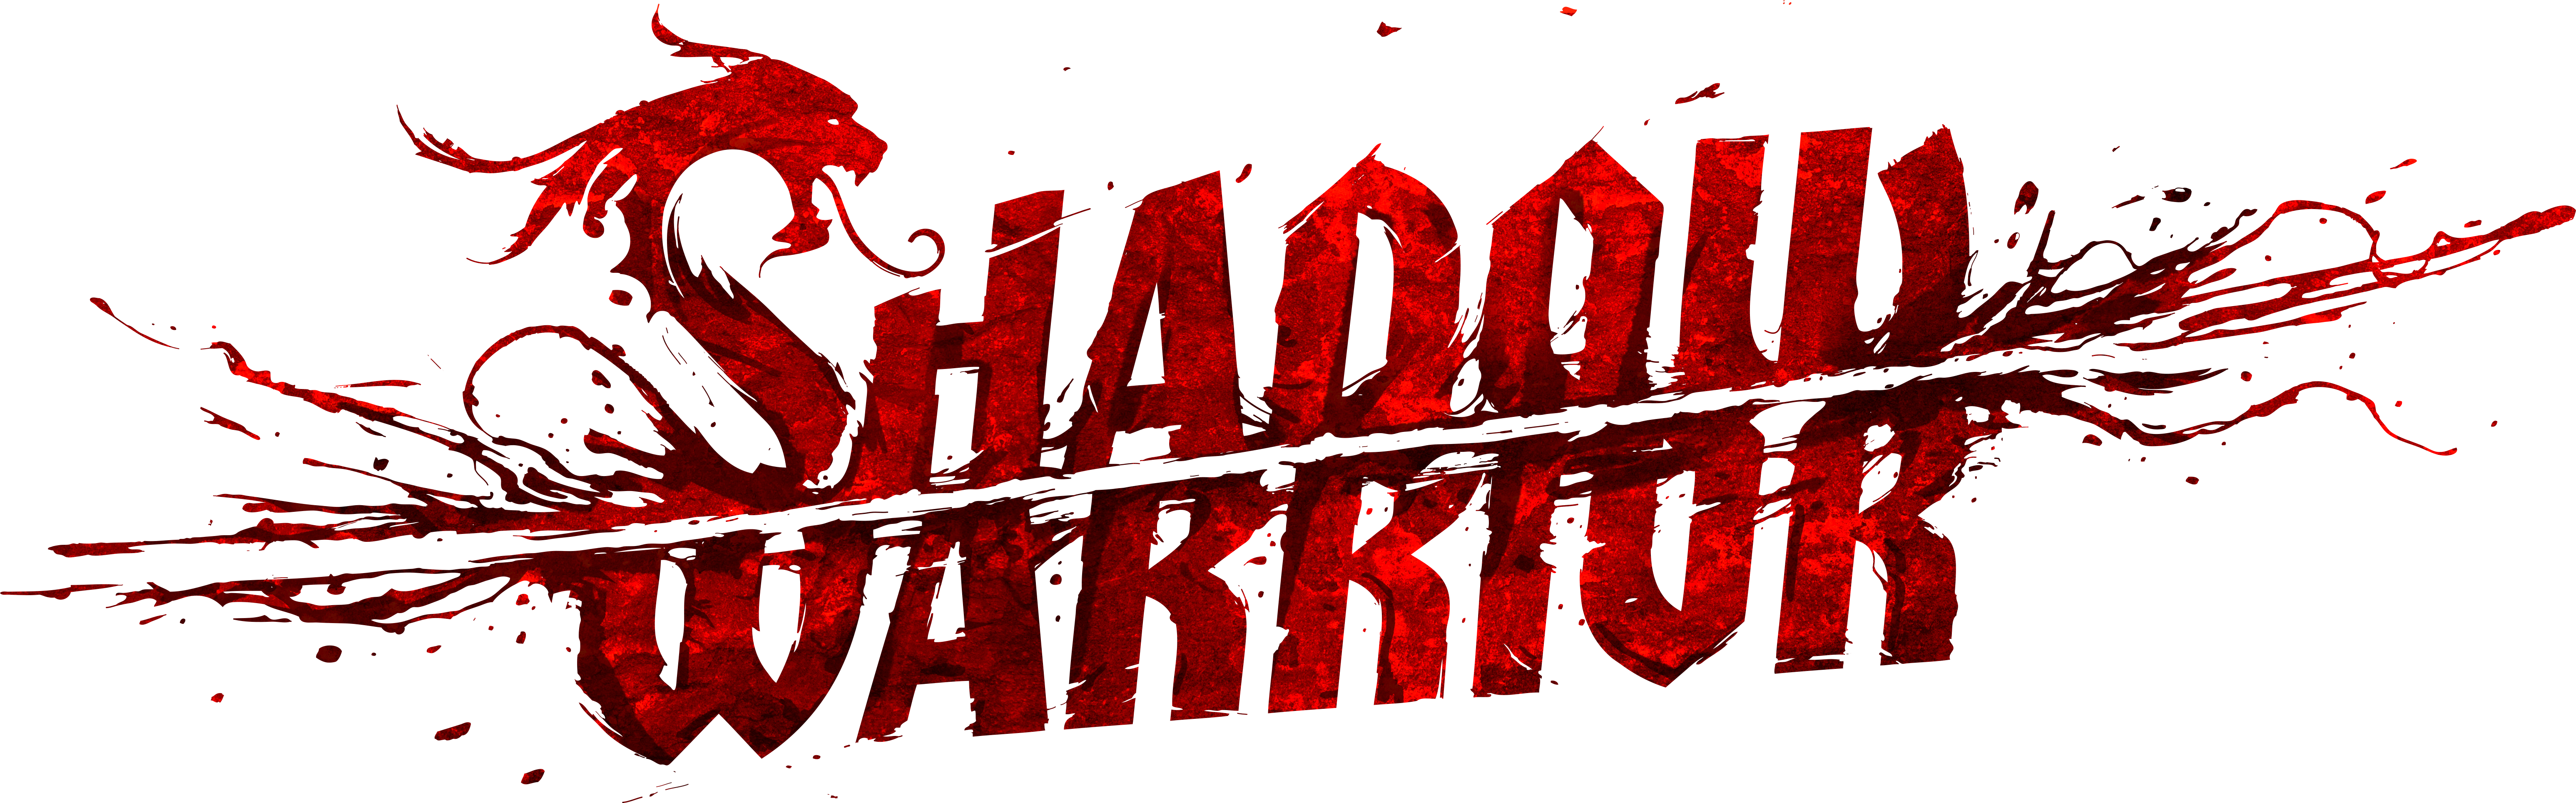 Shadow Warrior (2013)